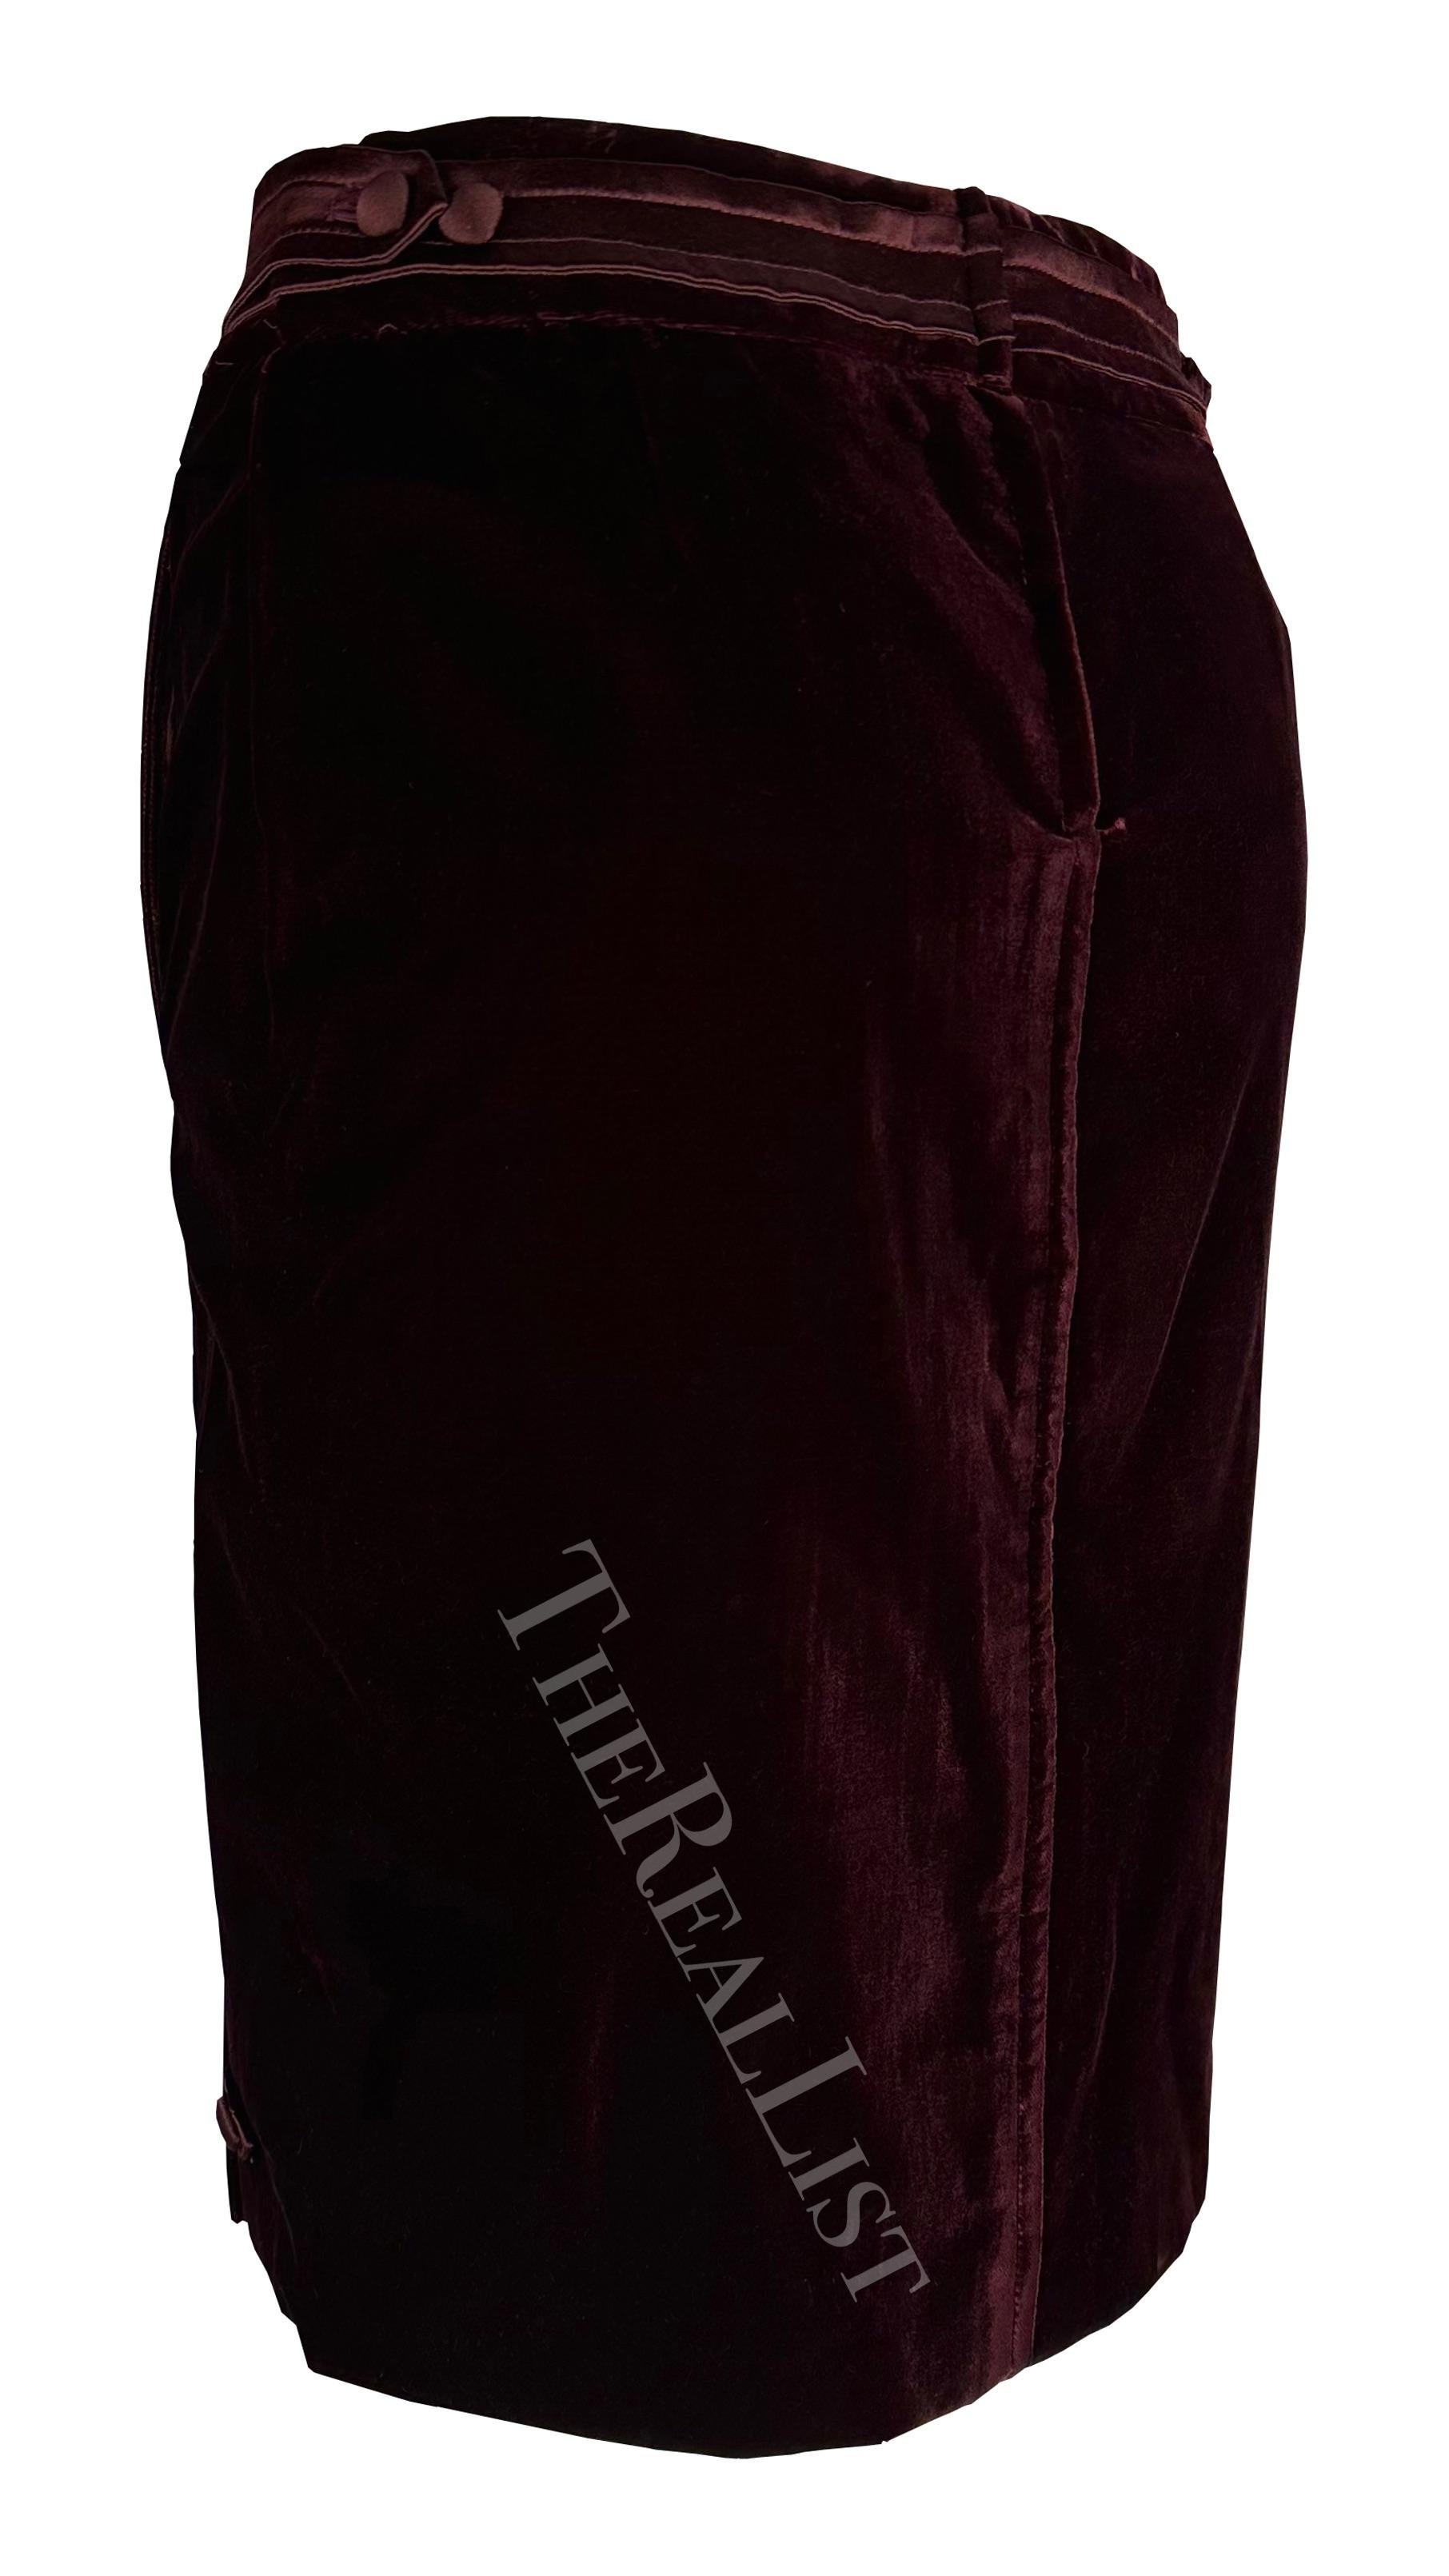 F/W 2004 Yves Saint Laurent by Tom Ford Deep Red Velvet Satin Sash Skirt Suit  For Sale 6